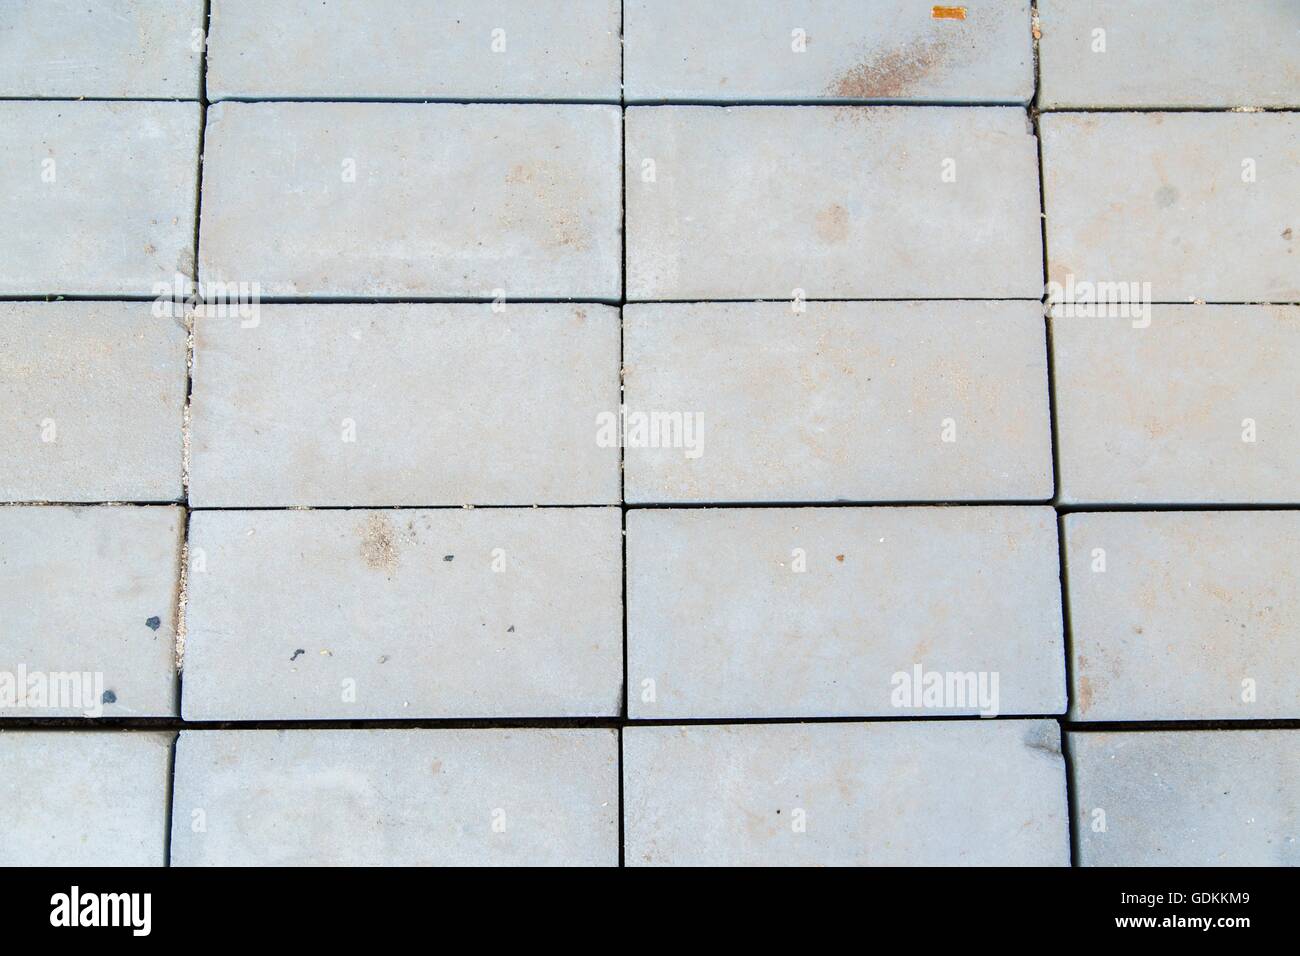 Texture Of Floor Concrete Slabs Stock Photo 111685289 Alamy